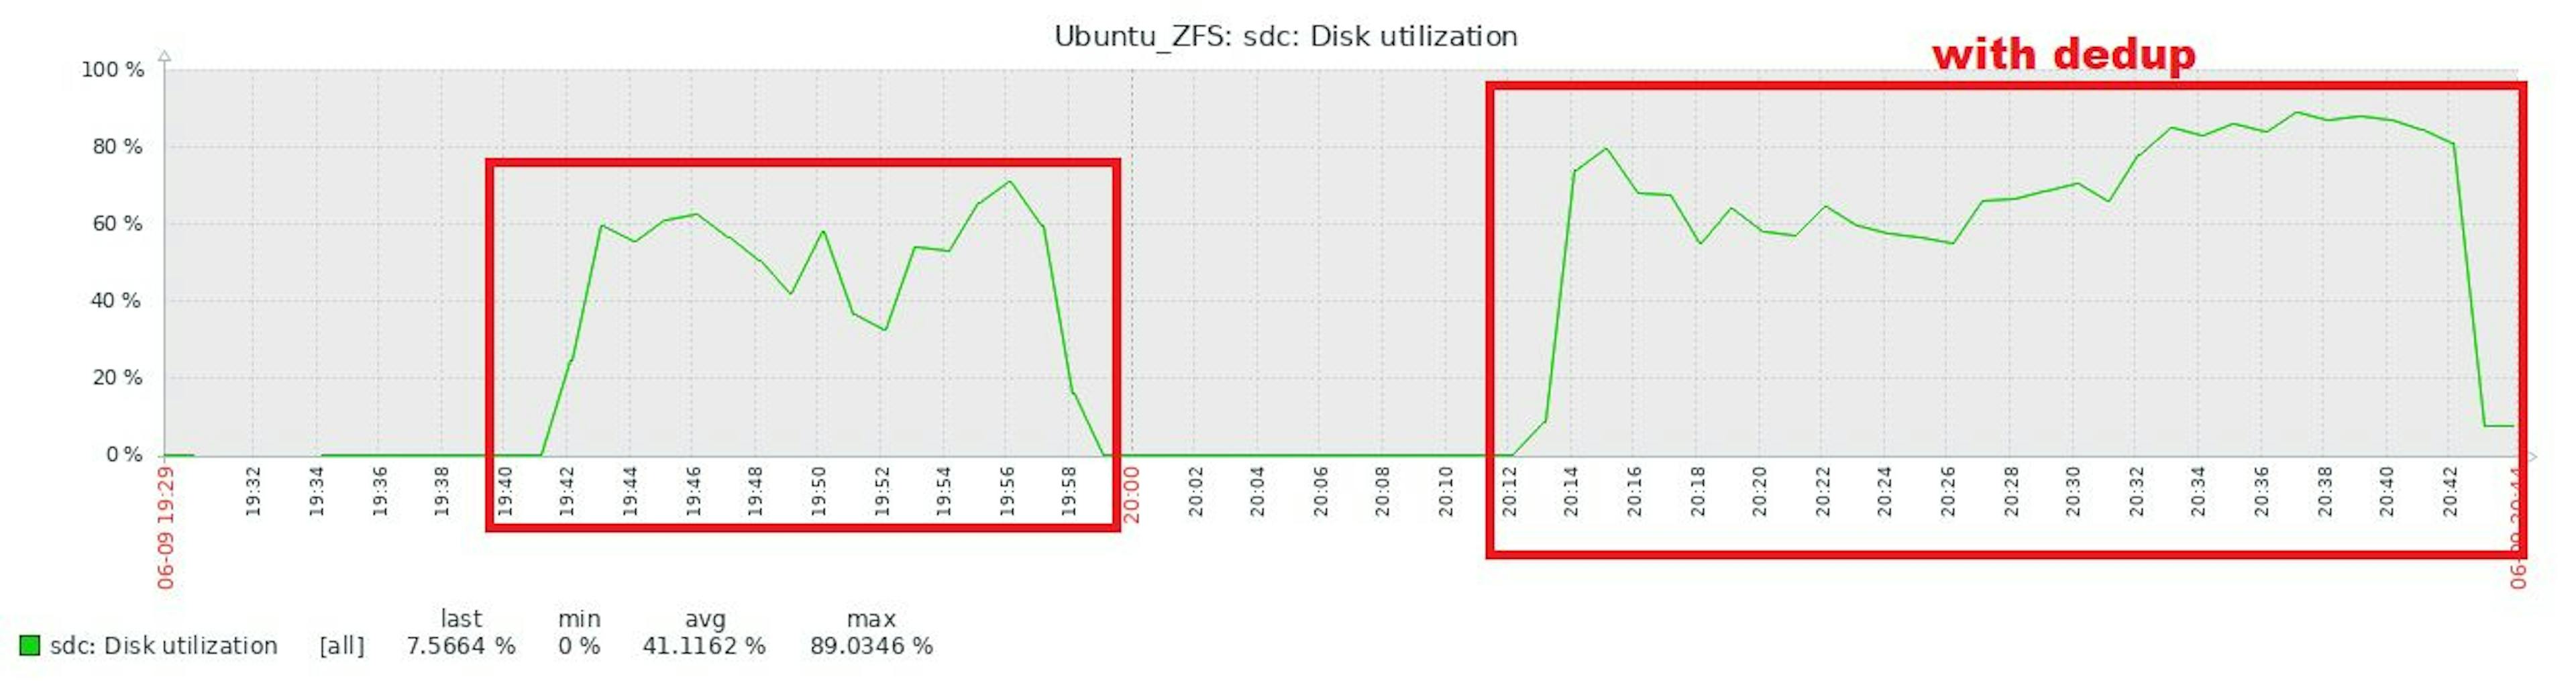 1.6.0 ZFS sdc Disk utilization